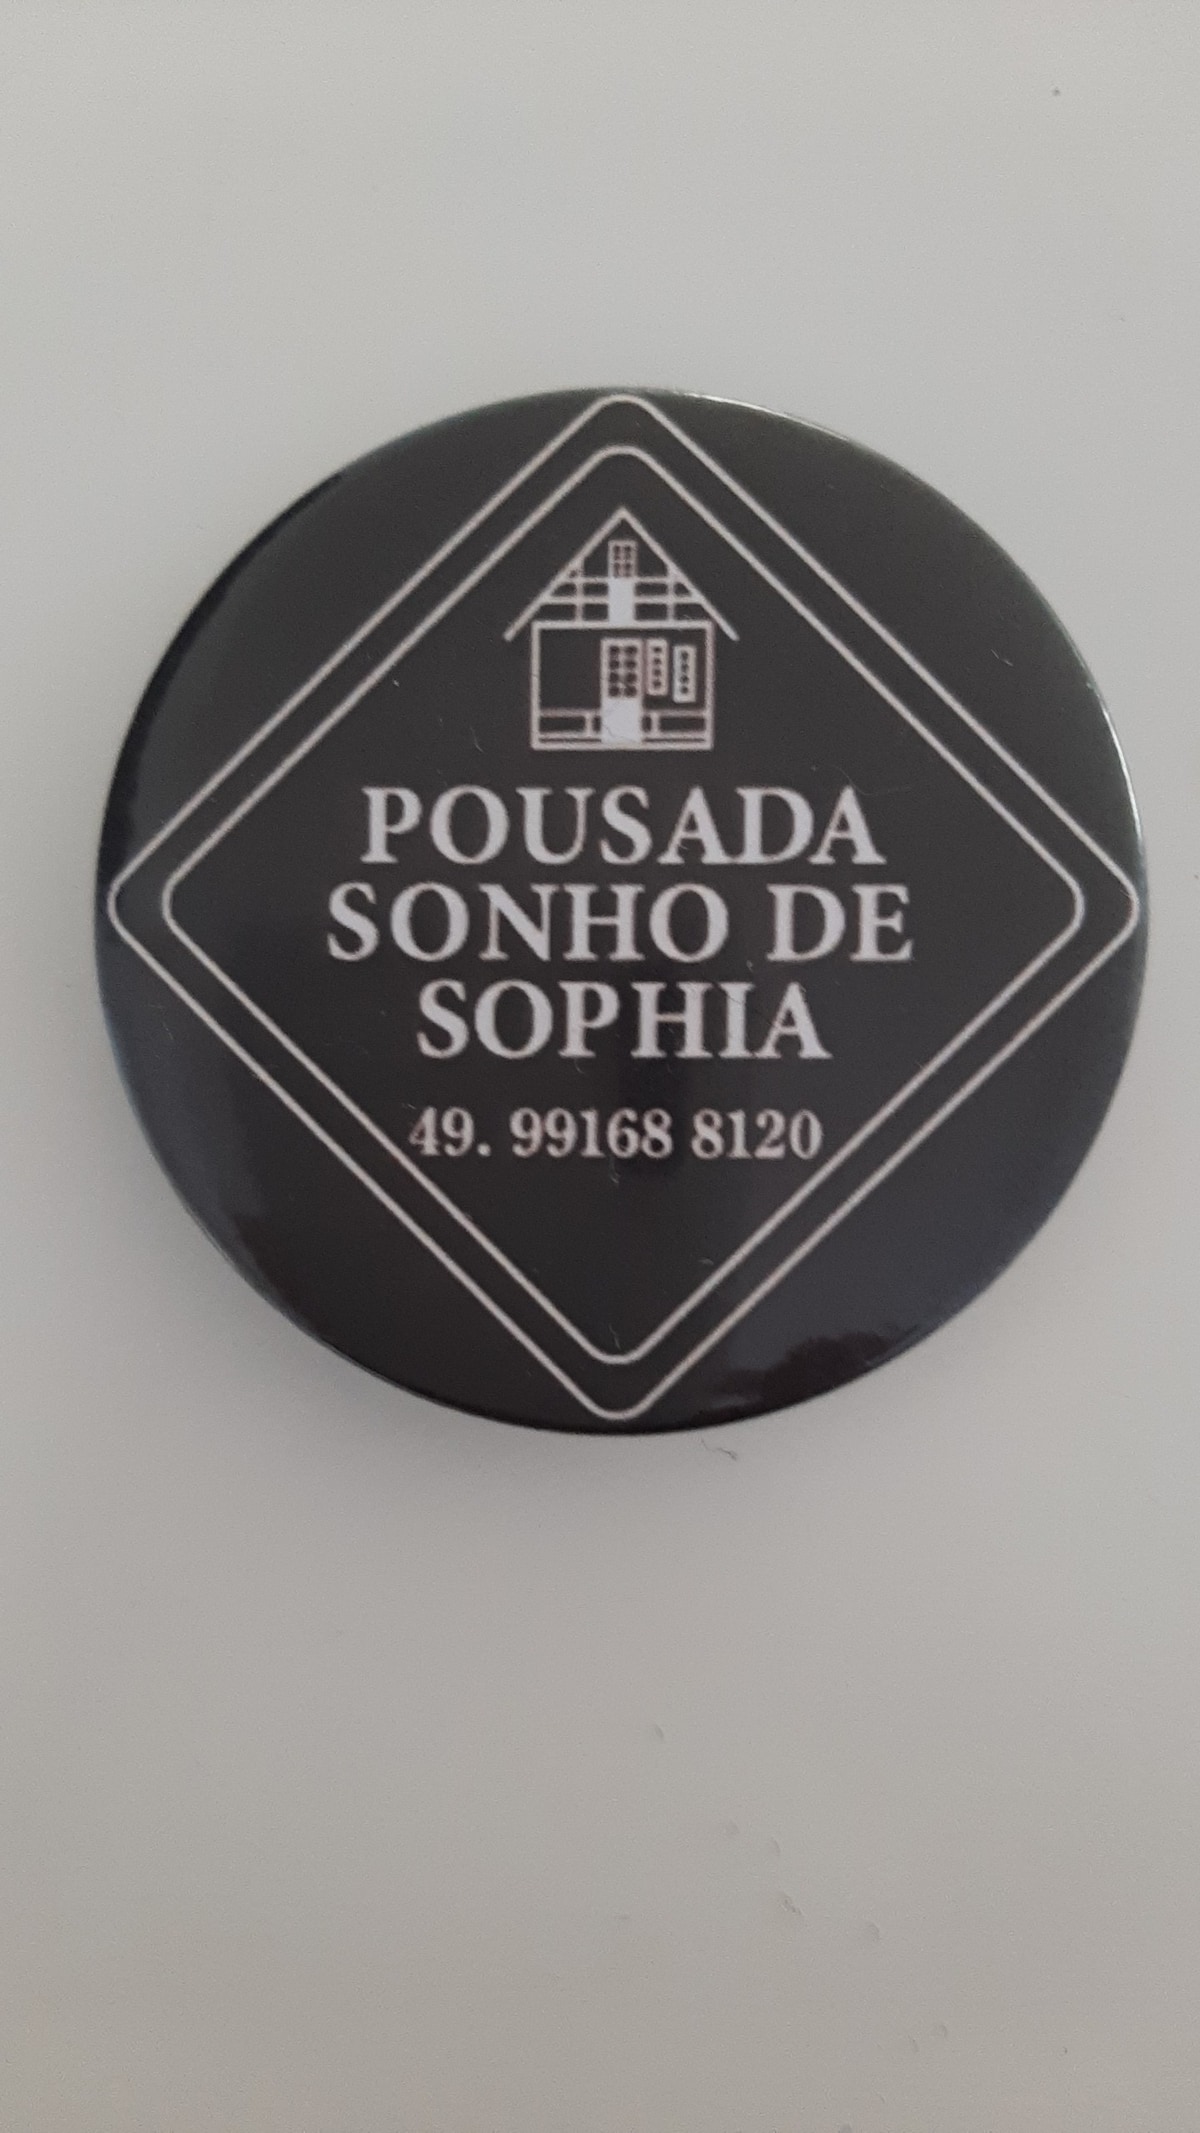 POUSADA SONHO DE SOPHIA -
大房子